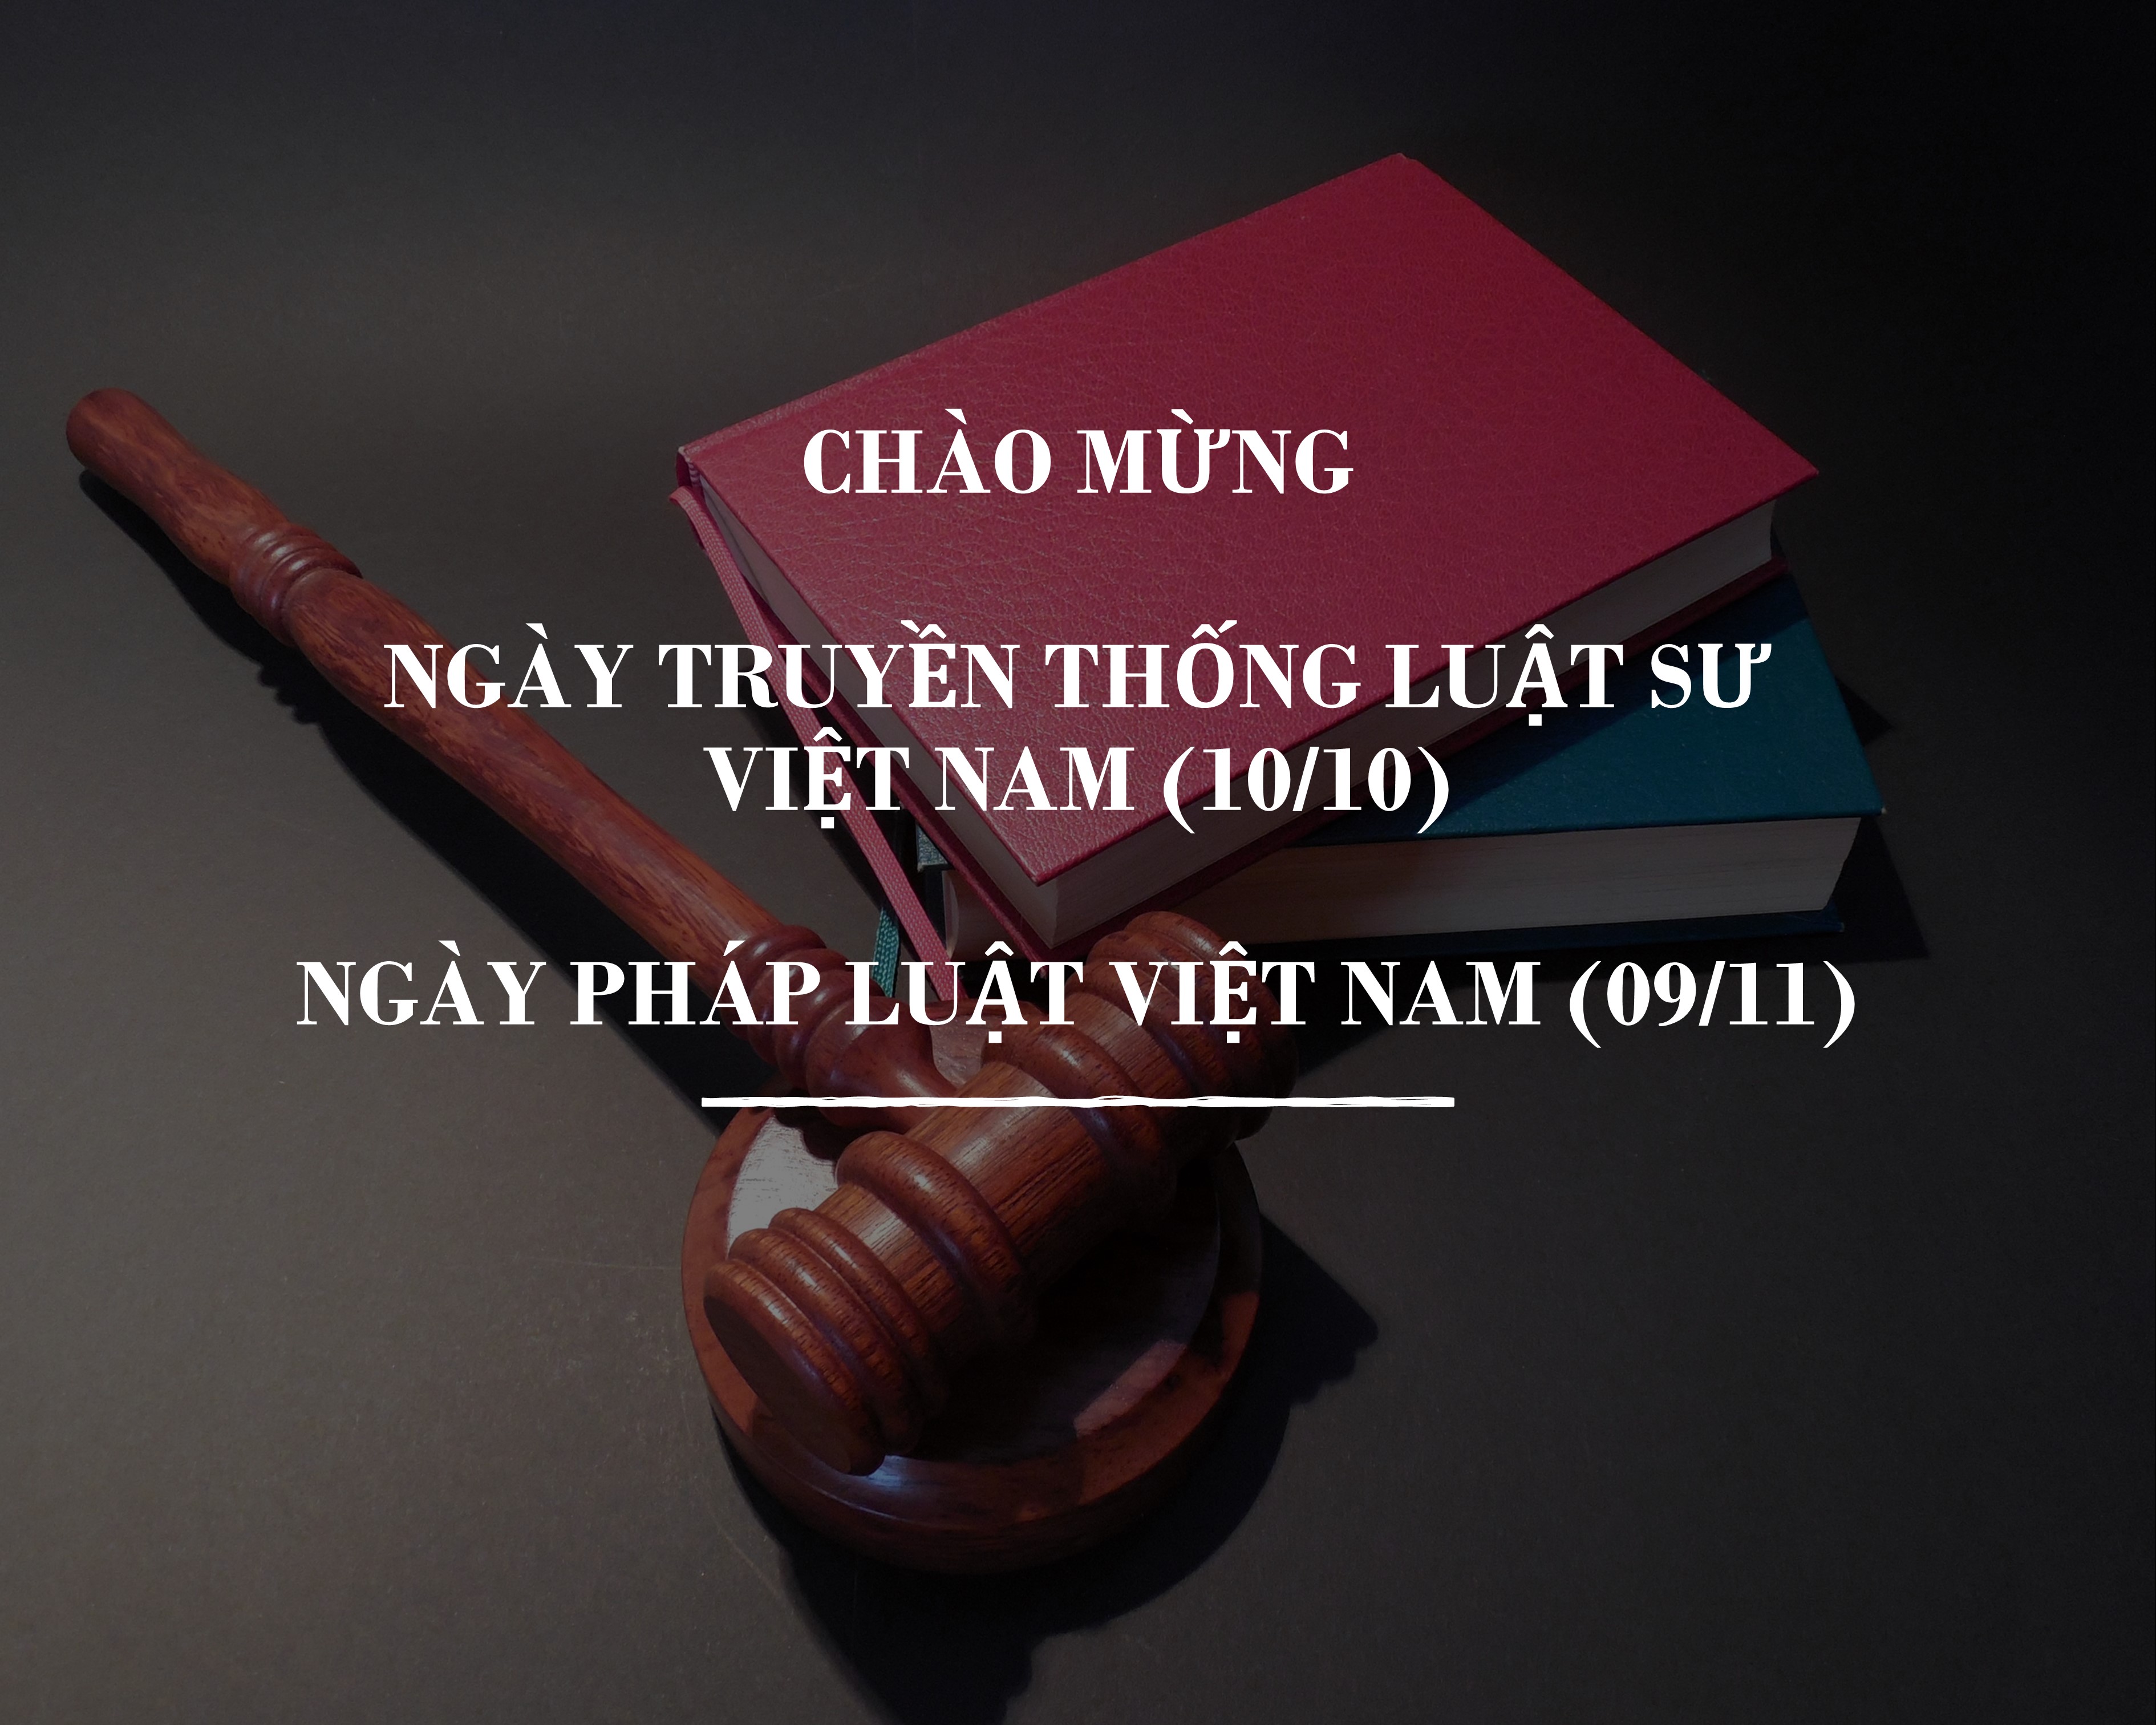 Tư vấn pháp luật miễn phí nhân Ngày truyền thống luật sư Việt Nam 2020